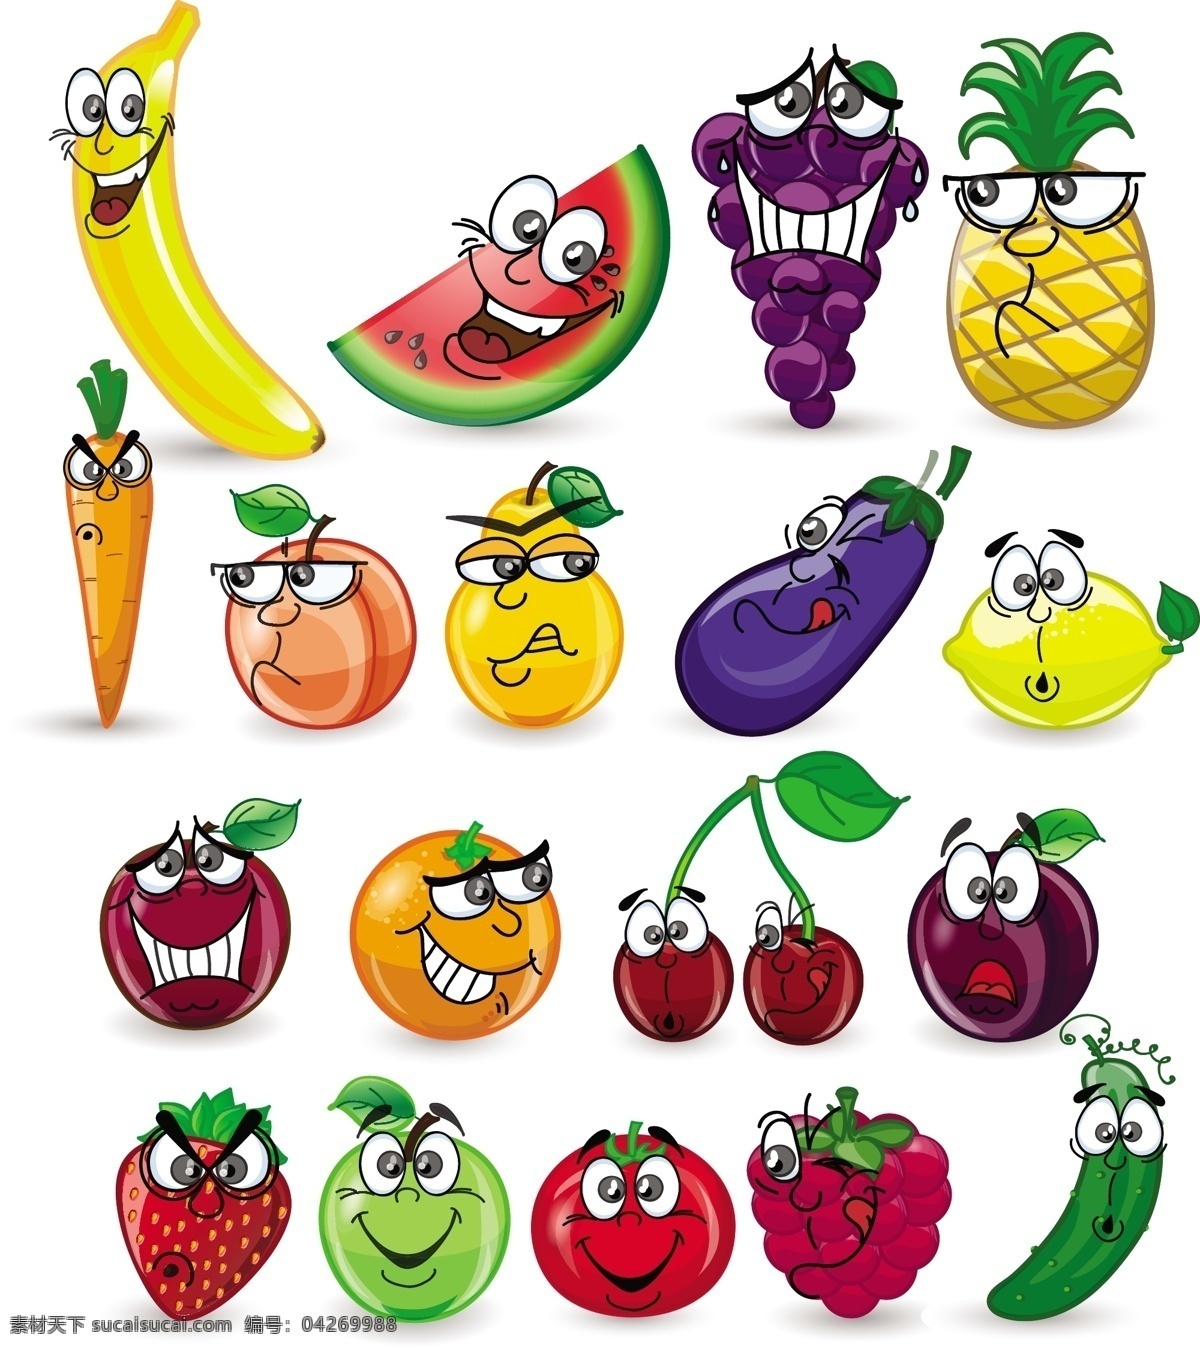 卡通水果插画 卡通水果 卡通漫画 卡通食物 卡通表情 香蕉 樱桃 西瓜 柠檬 葡萄 草莓 苹果 蔬菜水果 生物世界 矢量素材